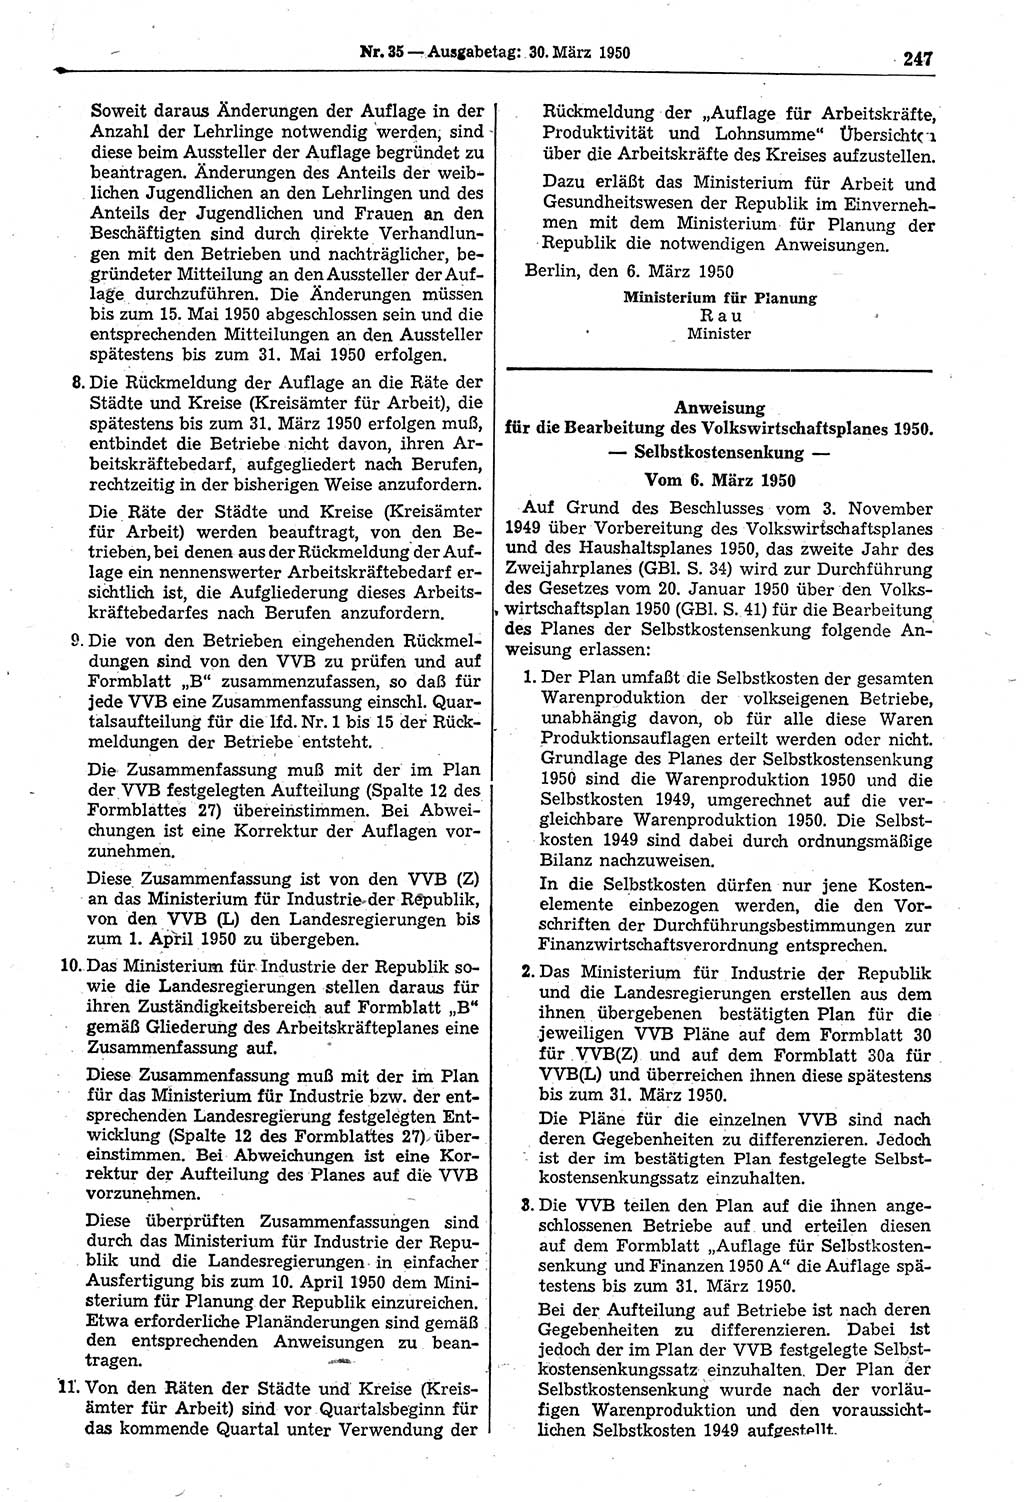 Gesetzblatt (GBl.) der Deutschen Demokratischen Republik (DDR) 1950, Seite 247 (GBl. DDR 1950, S. 247)